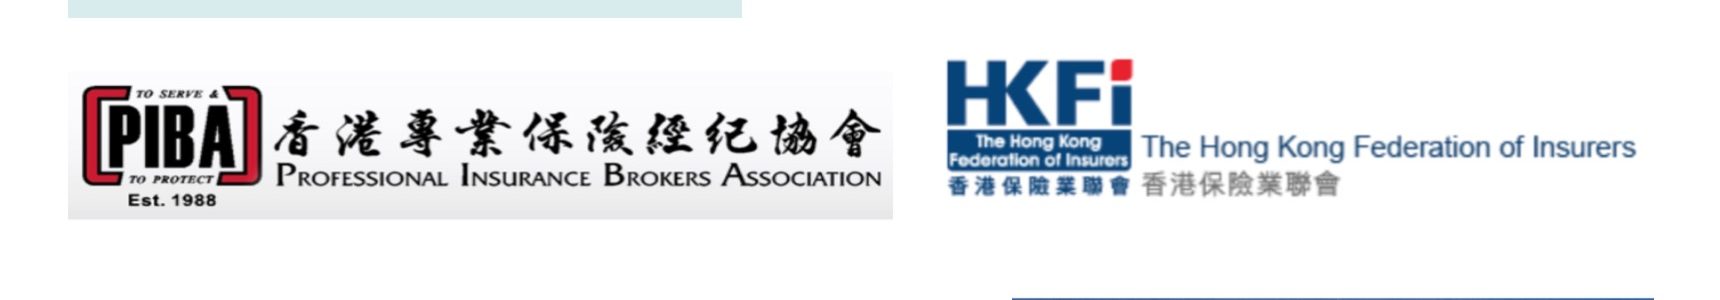 香港 金融保險業 管理機構